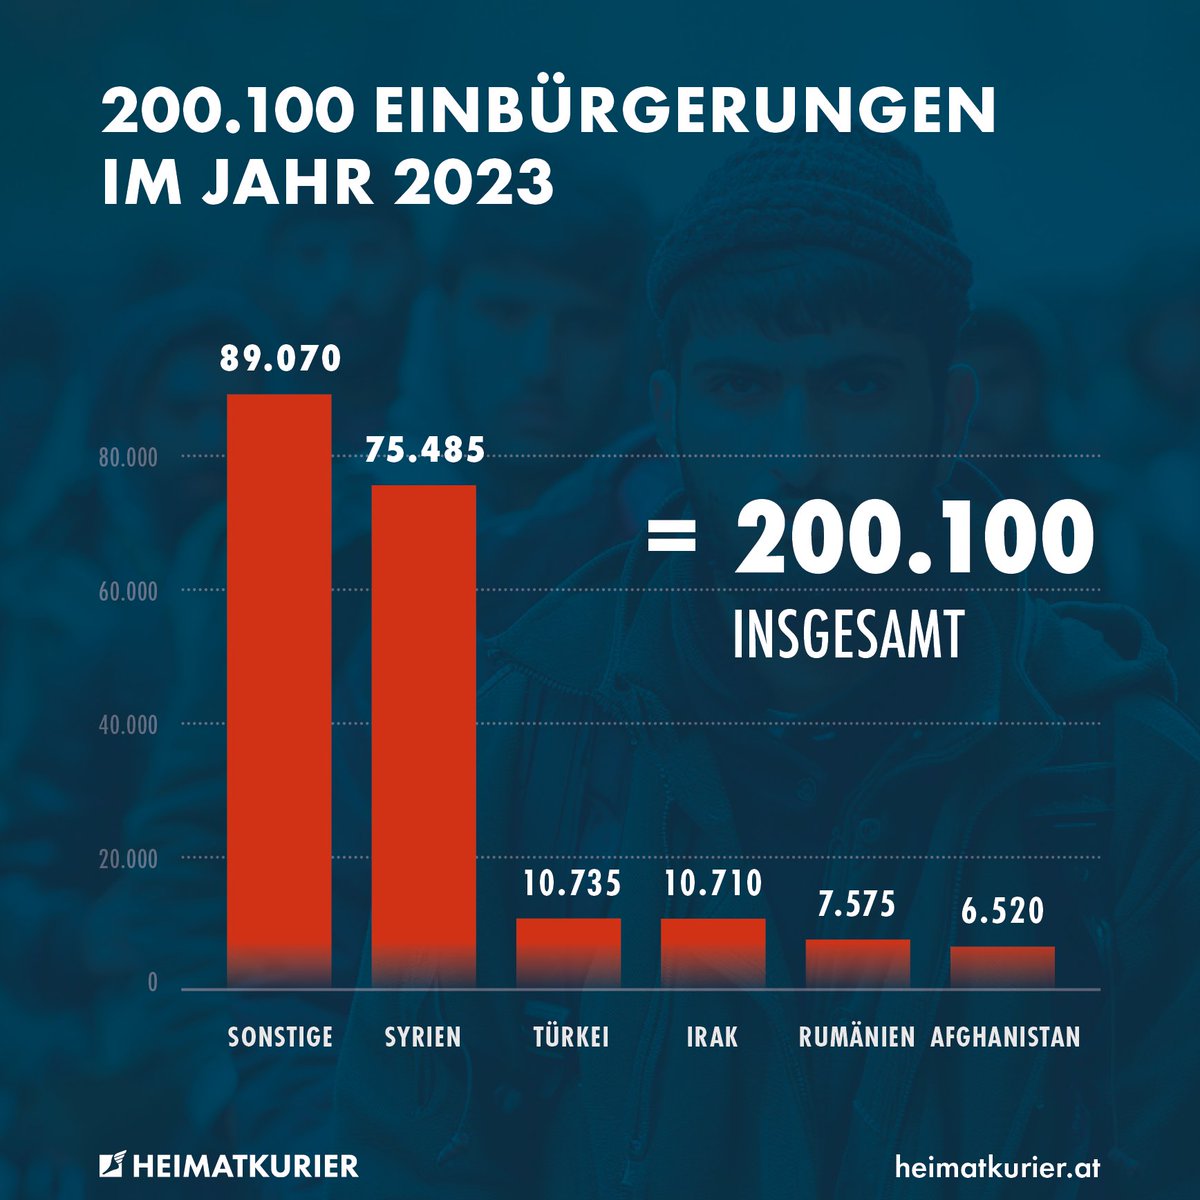 Die Ampel macht mit dem Bevölkerungsaustausch Ernst: vergangenes Jahr wurden in Deutschland mehr als 200.000 Ausländer eingebürgert – der größte Wert seit der Jahrtausendwende. Mehr als die Hälfte aller Eingebürgerten stammen aus Syrien, dem Irak, der Türkei, Rumänien und